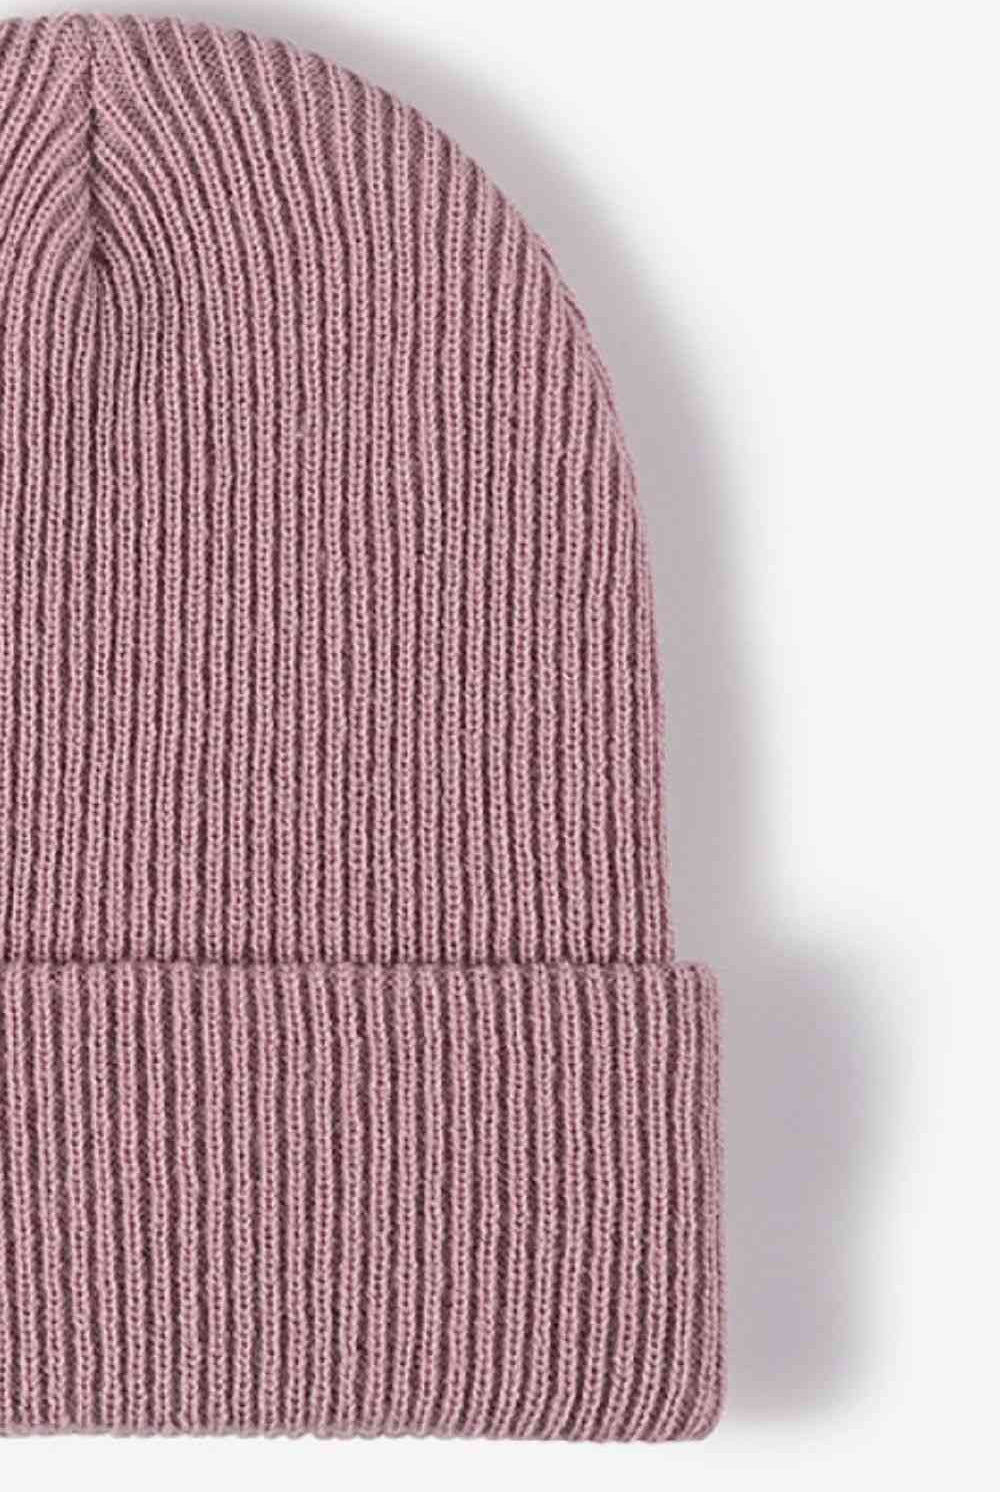 Thistle Warm Winter Knit Beanie Winter Accessories